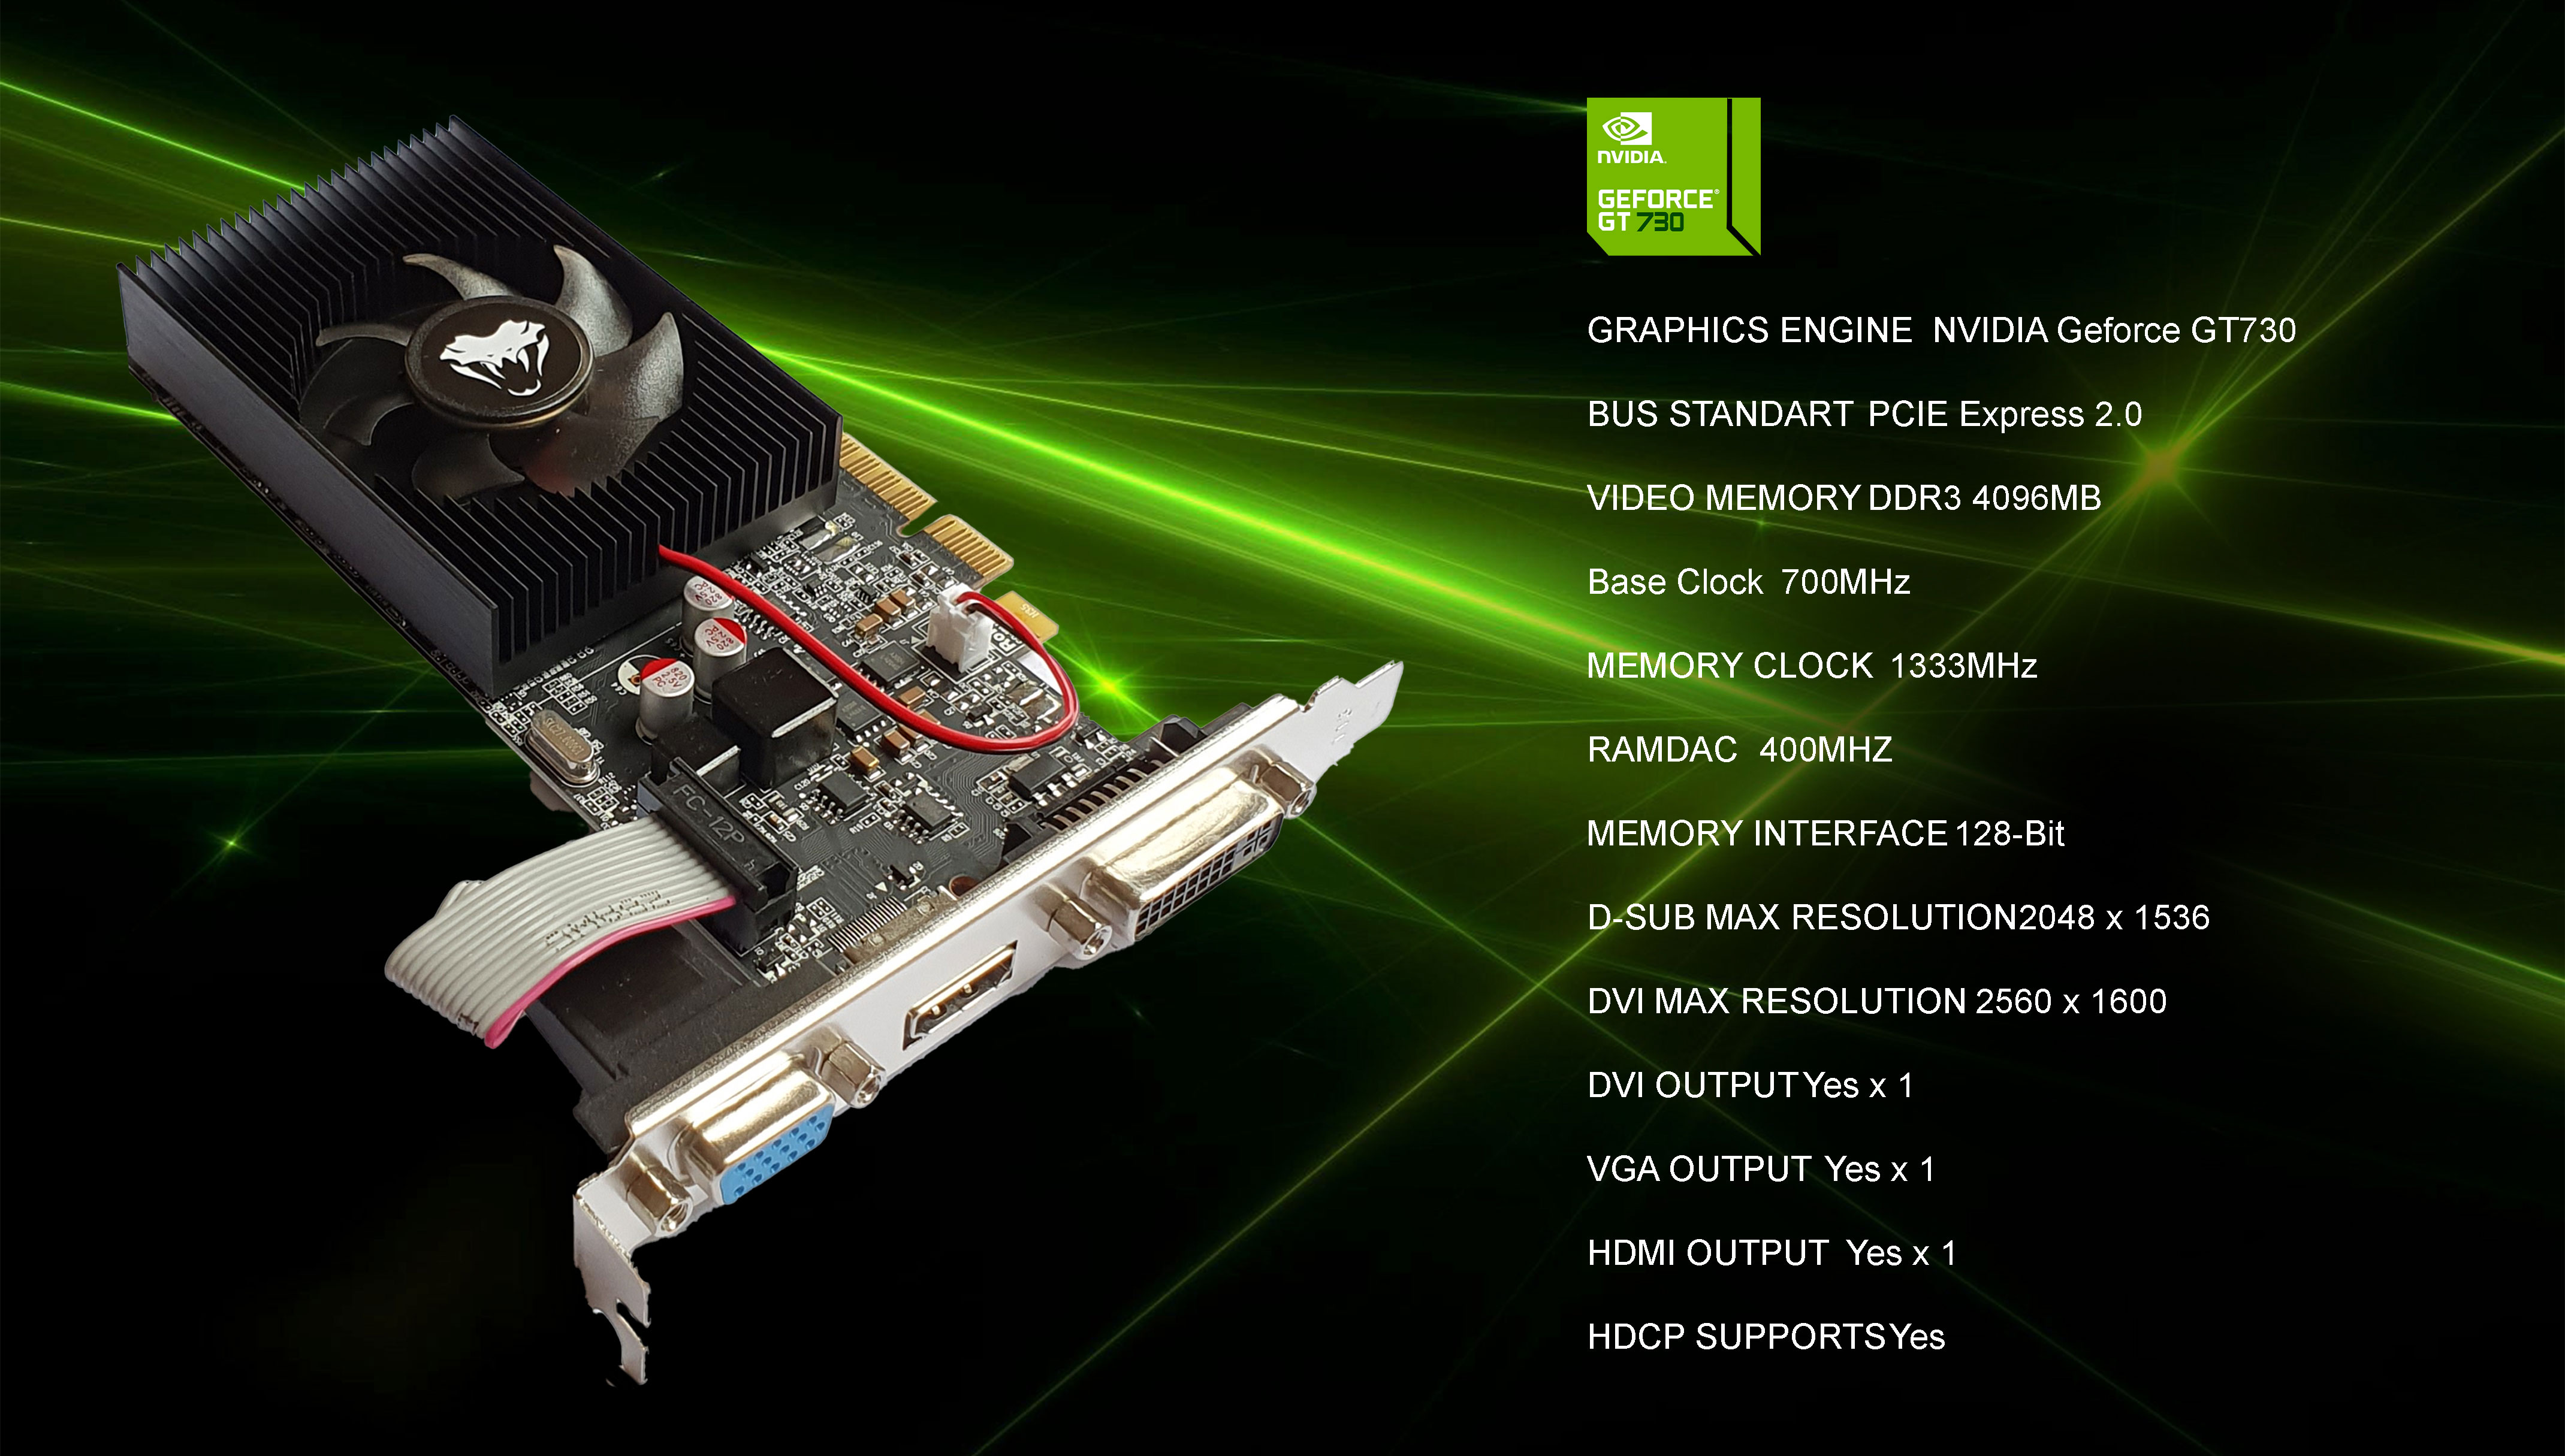 Colorful GeForce GT 730 4GB GDDR3